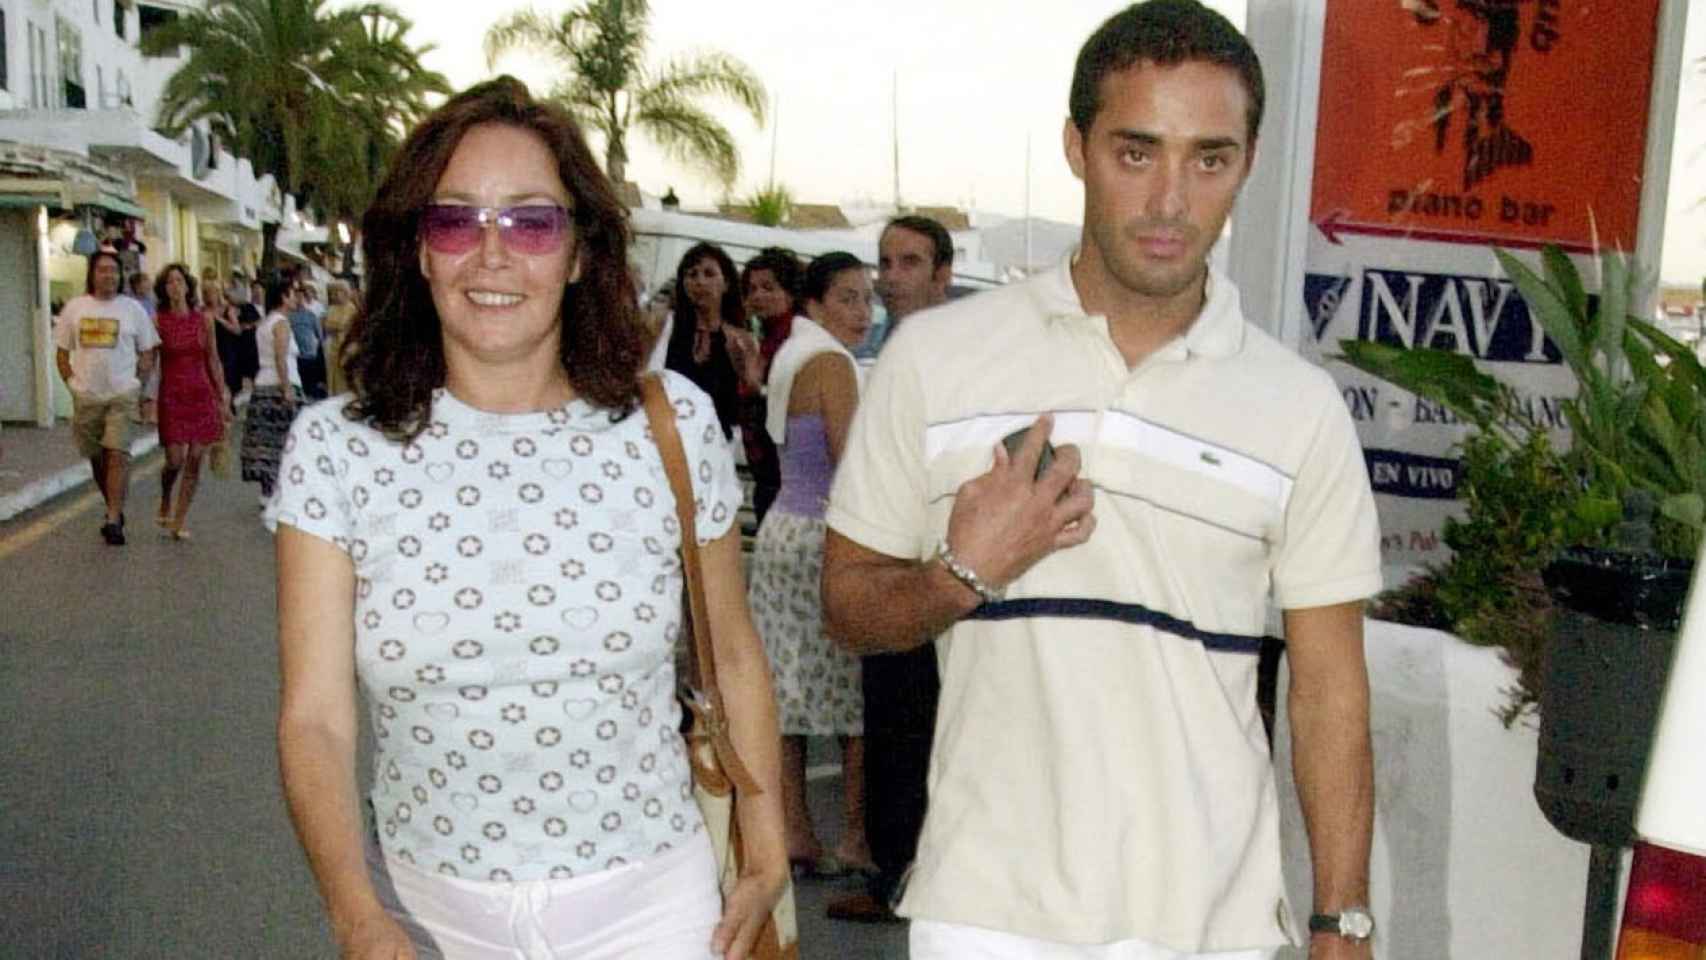 La actriz, junto a Rafa Garcia, hermano de Dinio, con quien mantuvo una relación en 2001.